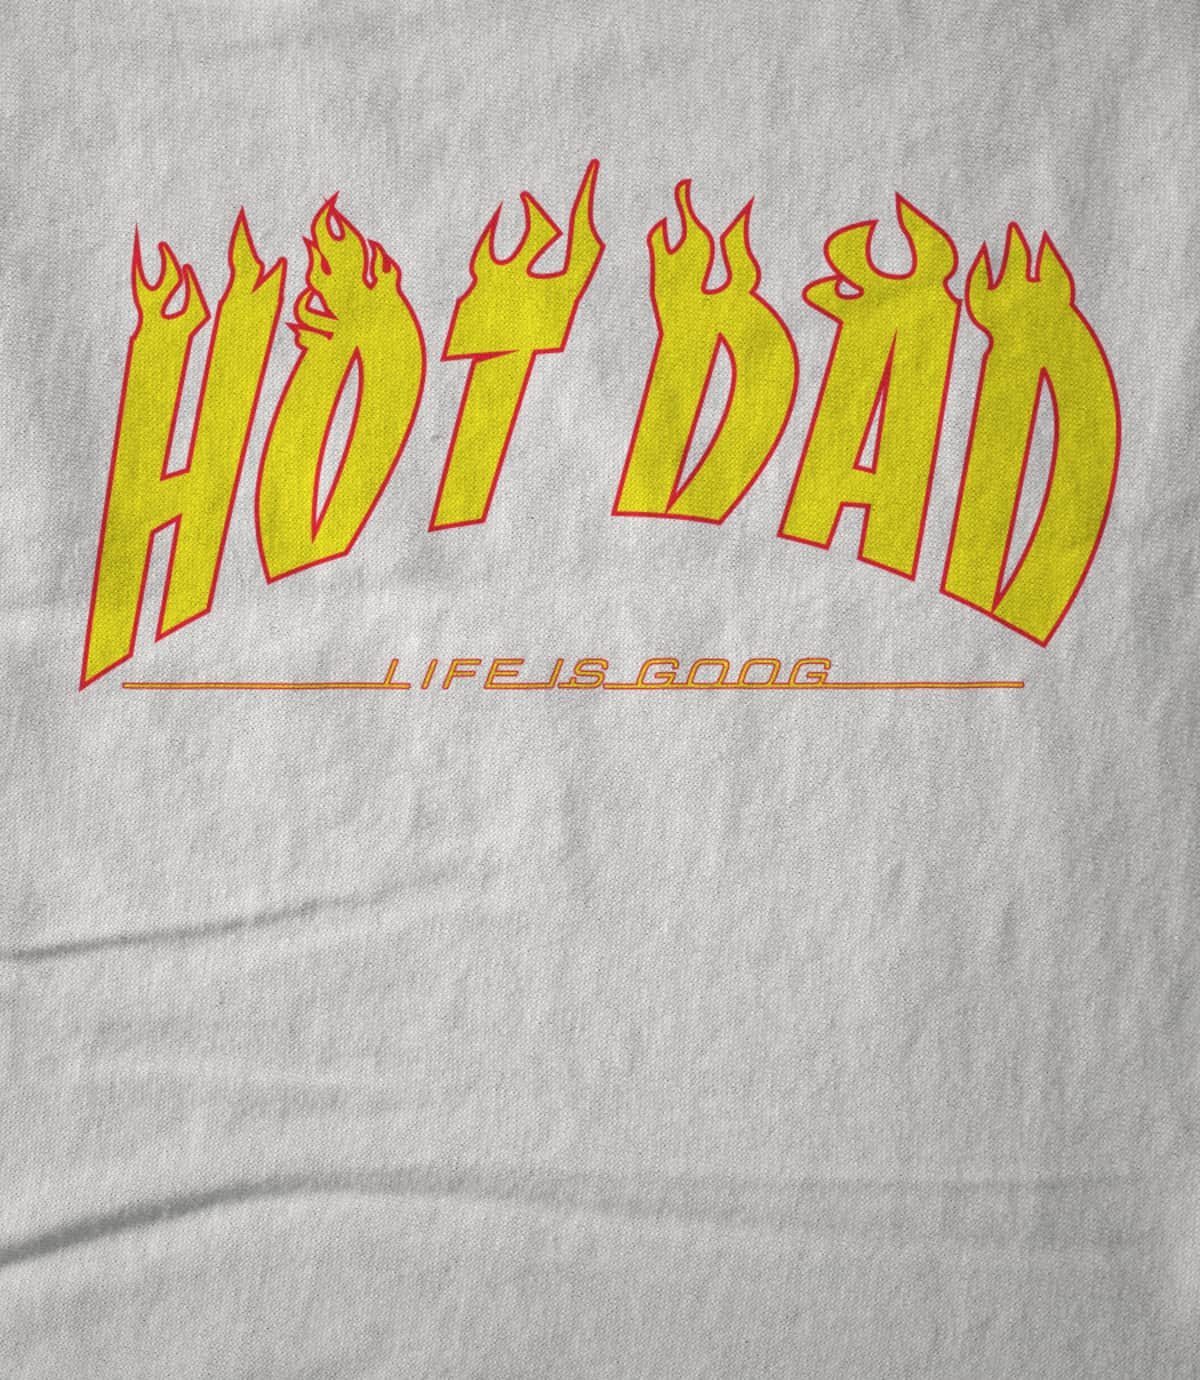 Hot Dad